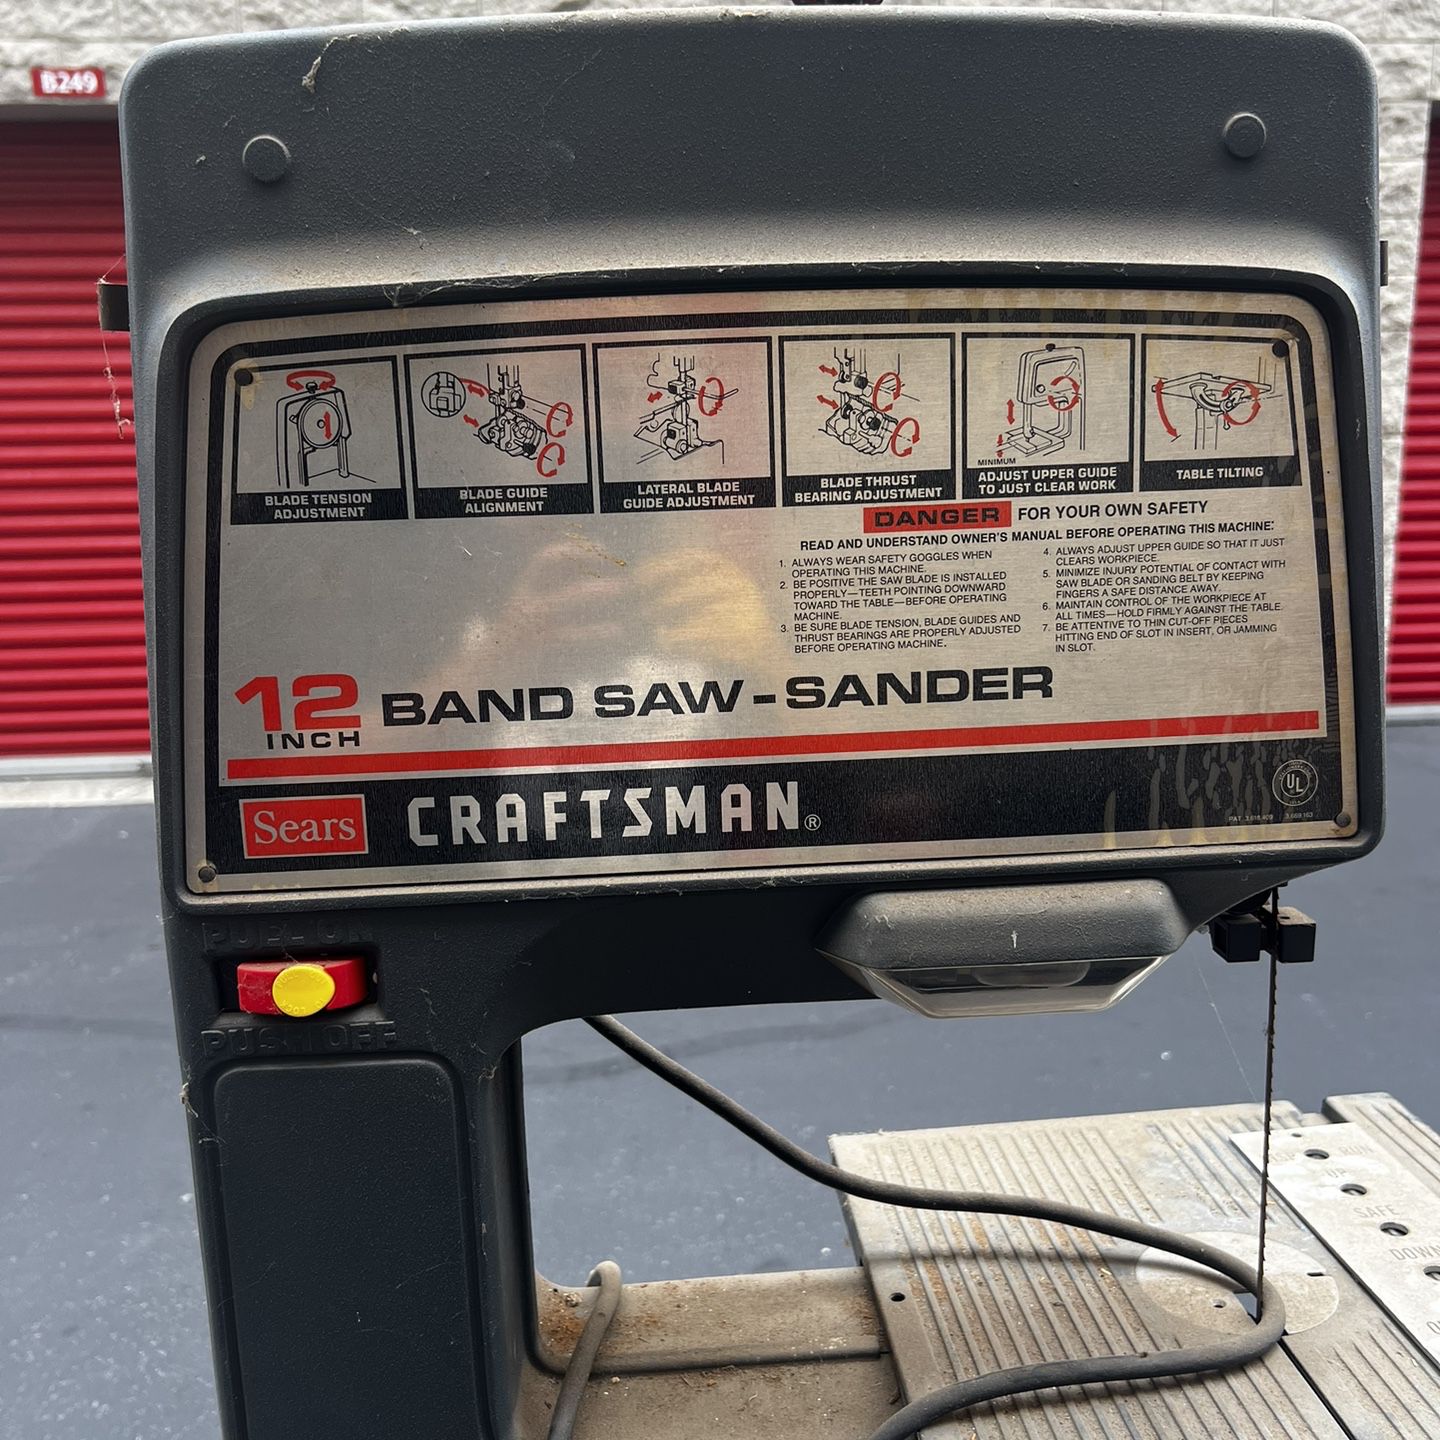 Craftsman 12” Band Saw